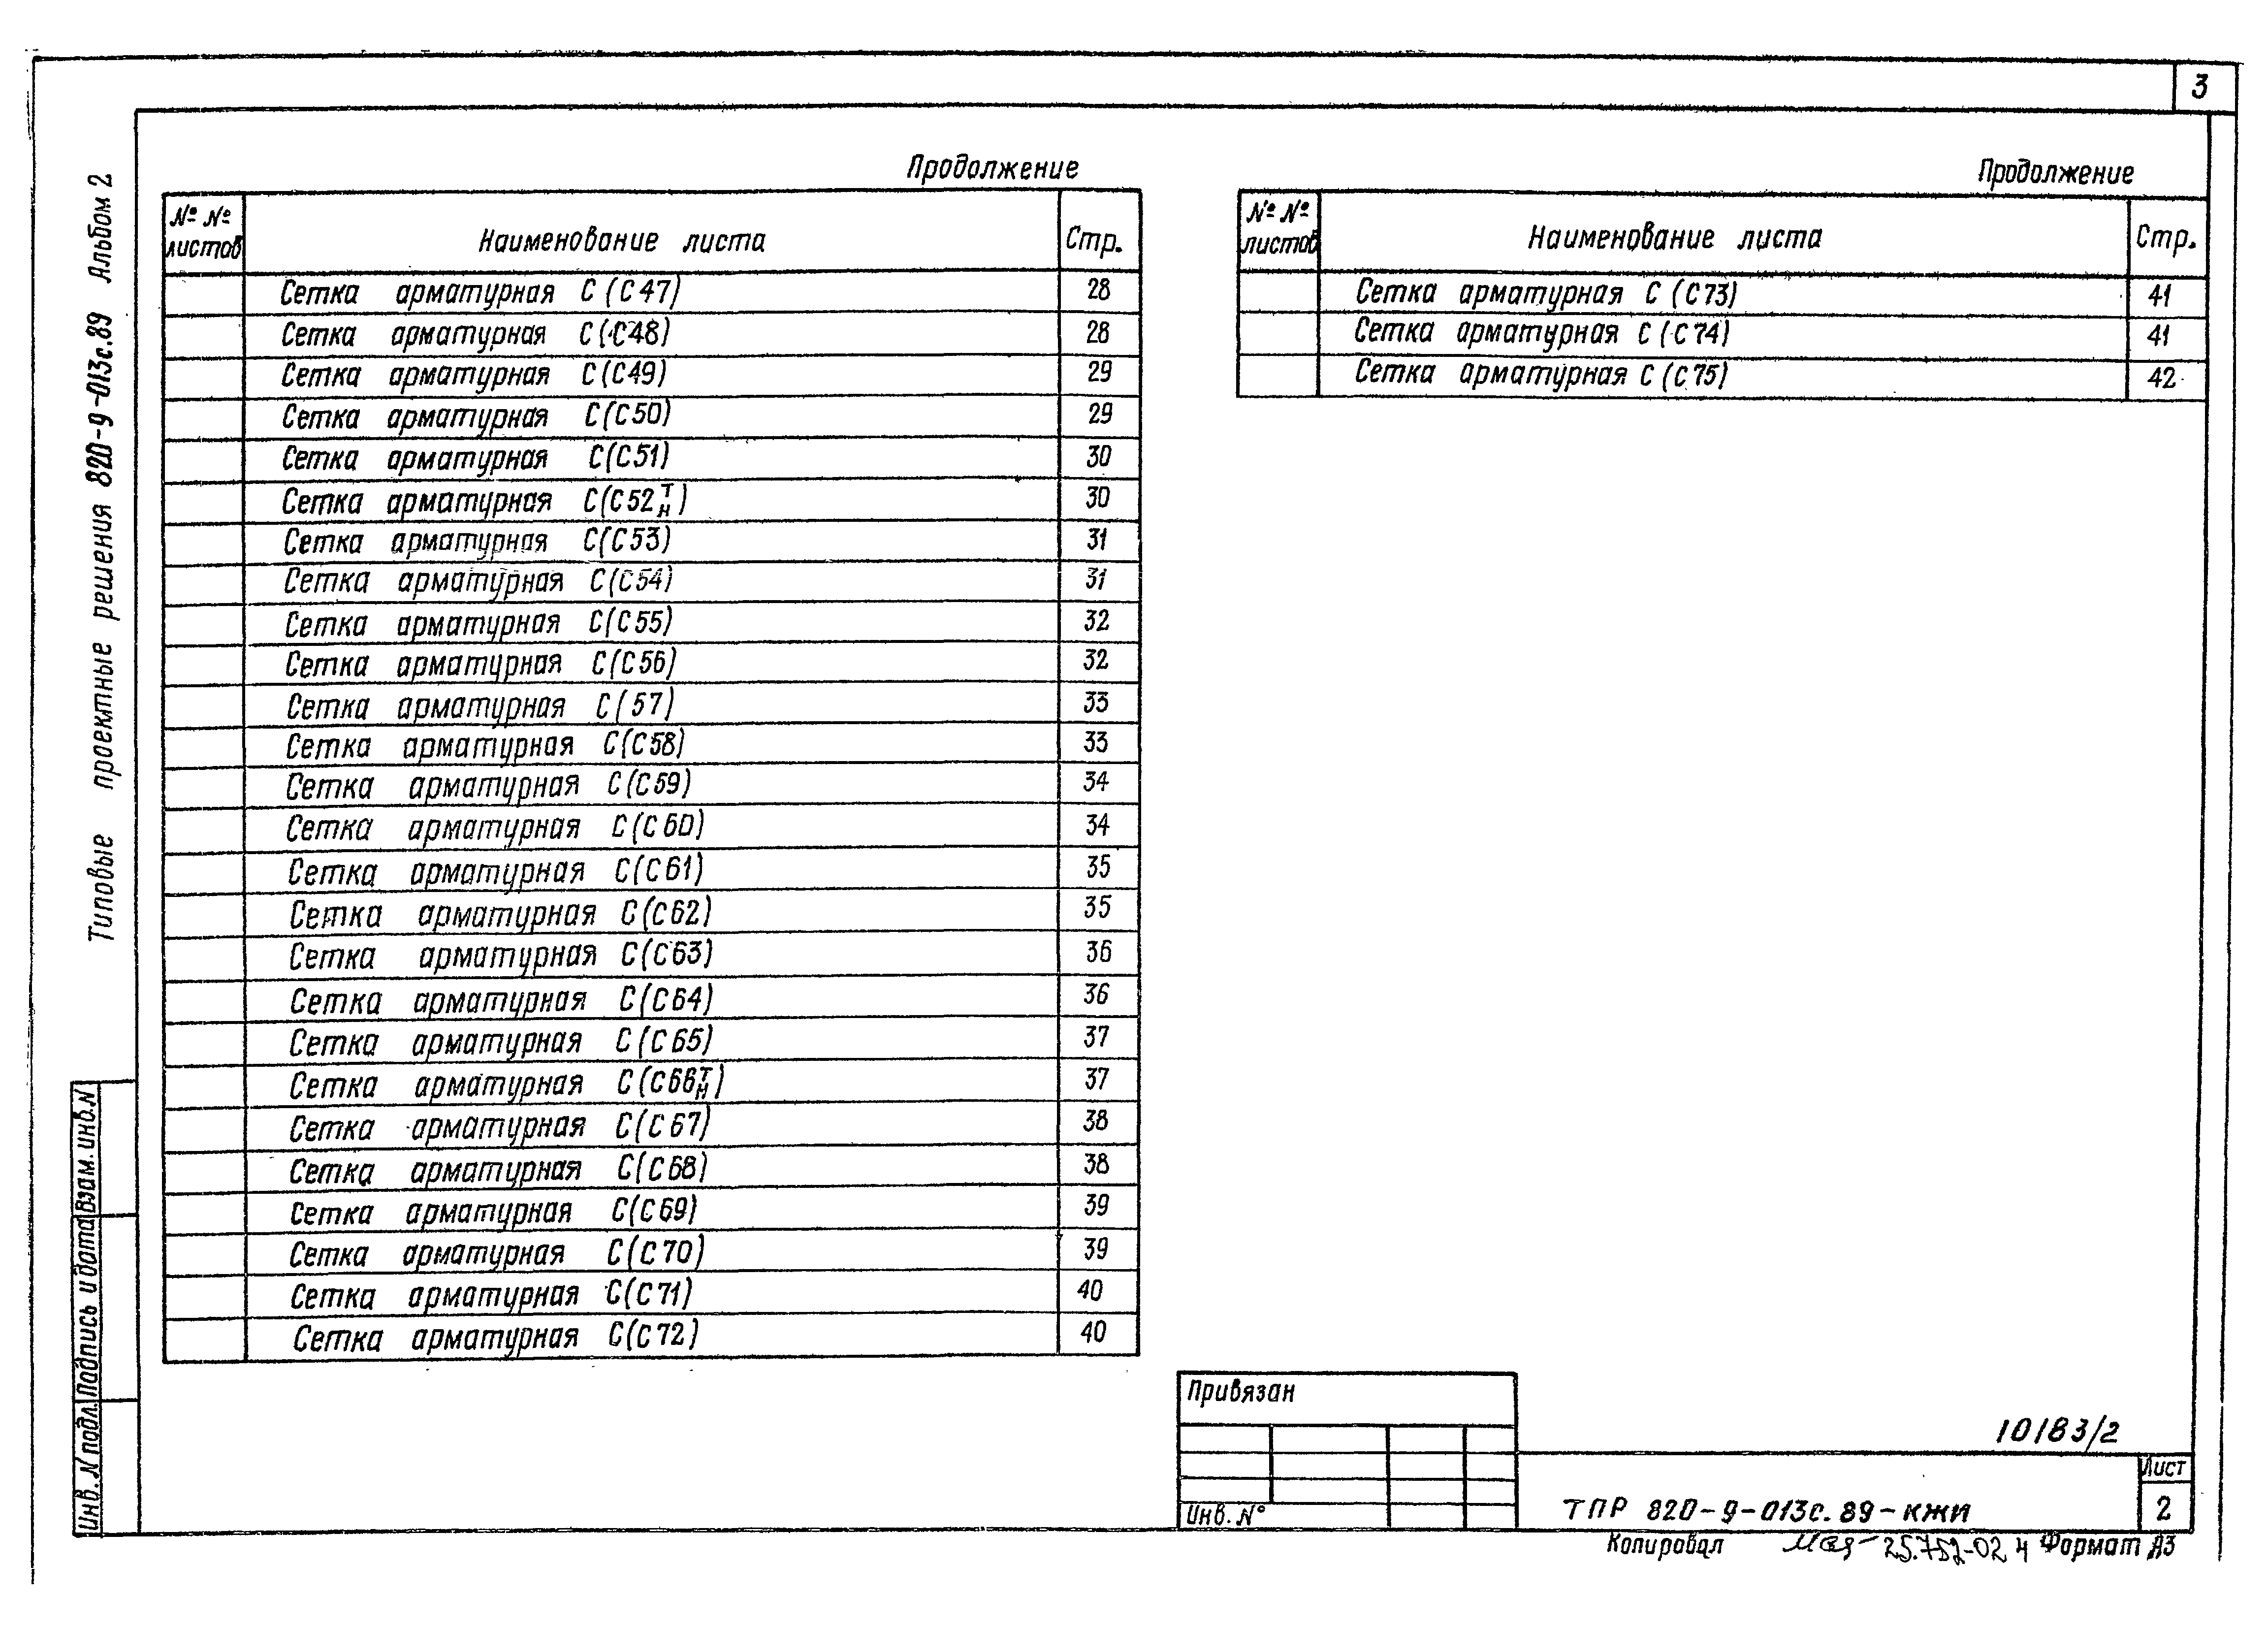 Типовые проектные решения 820-9-013с.89